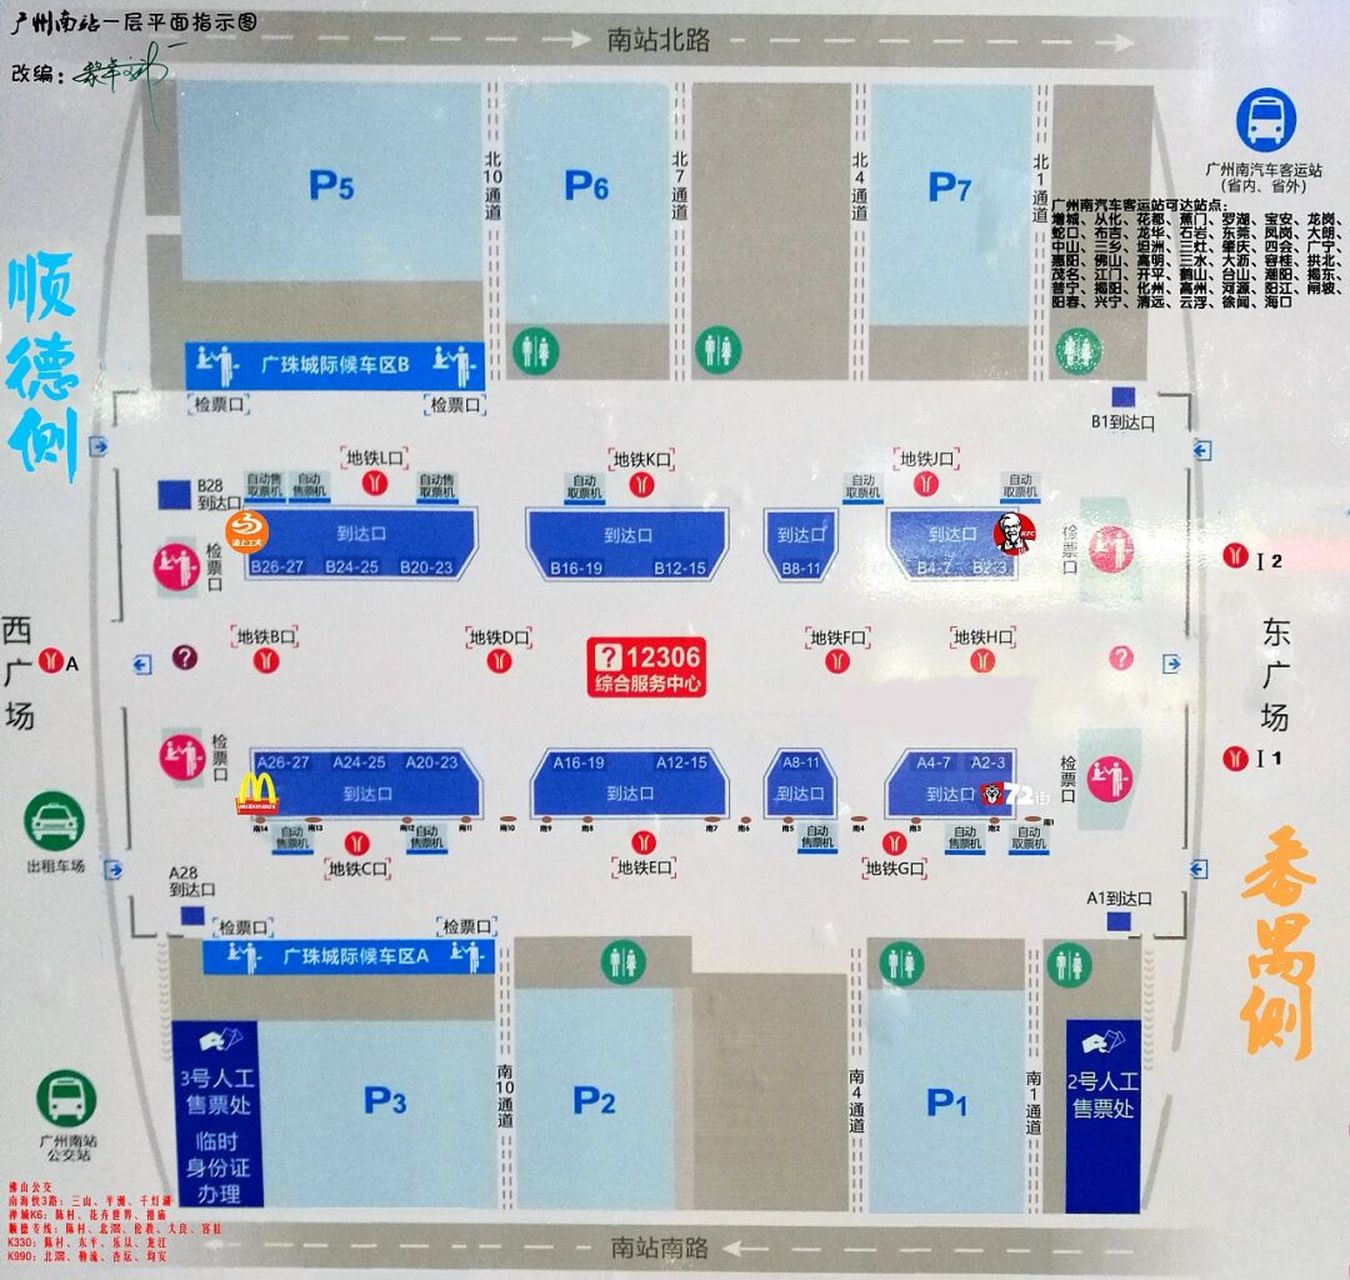 广州南站检票口平面图图片